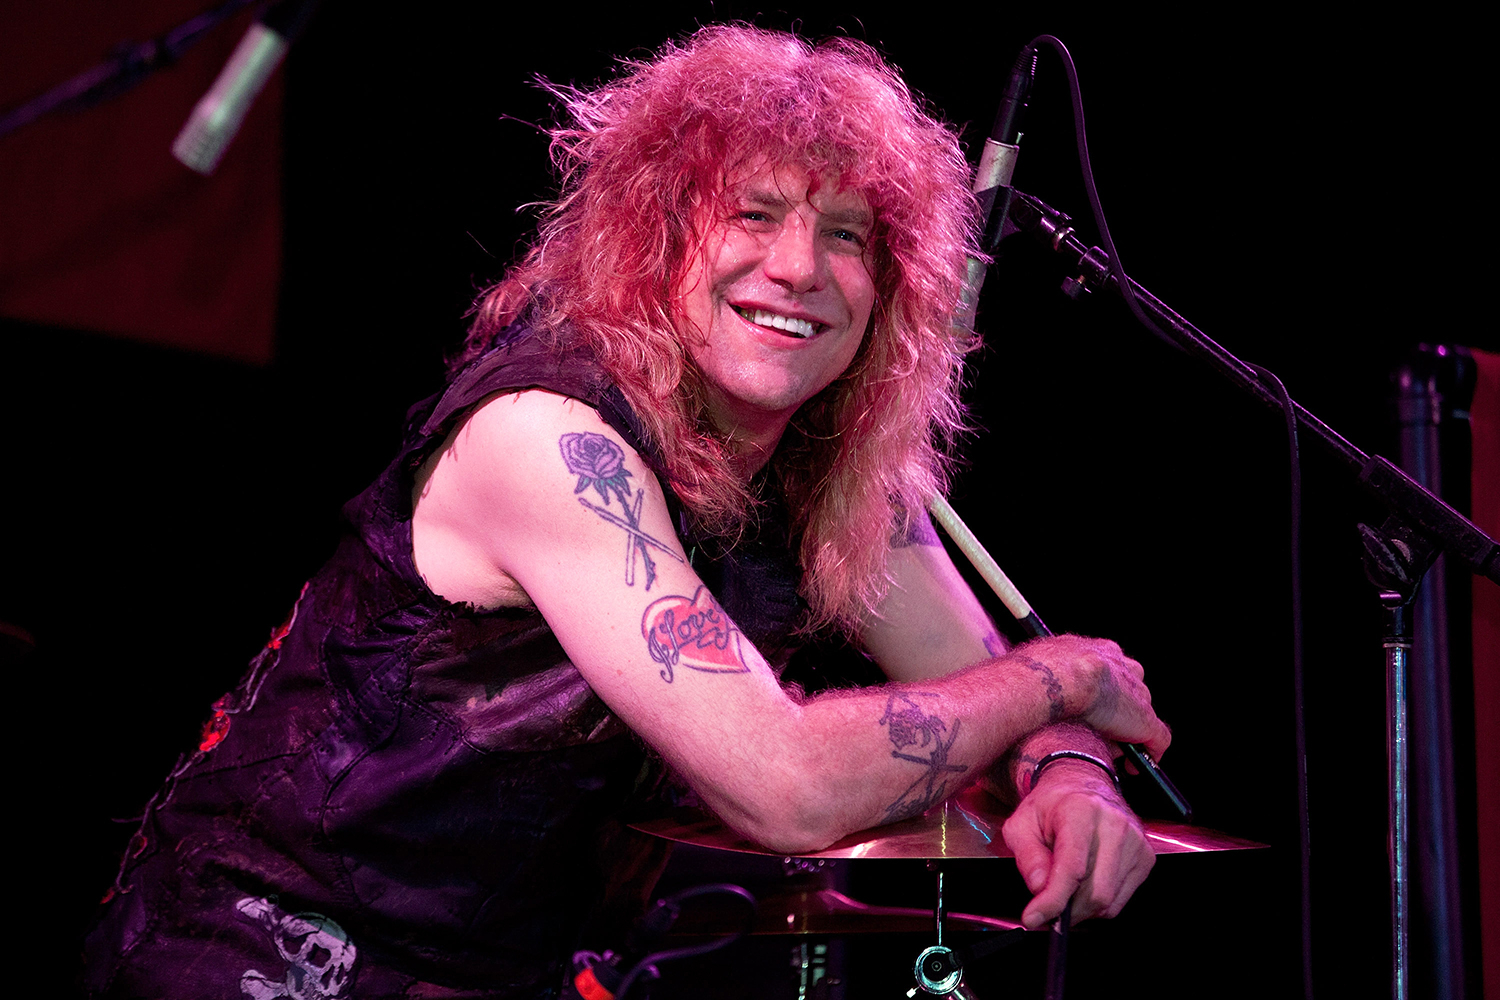 Why Did Steve Adler Leave Guns N' Roses?